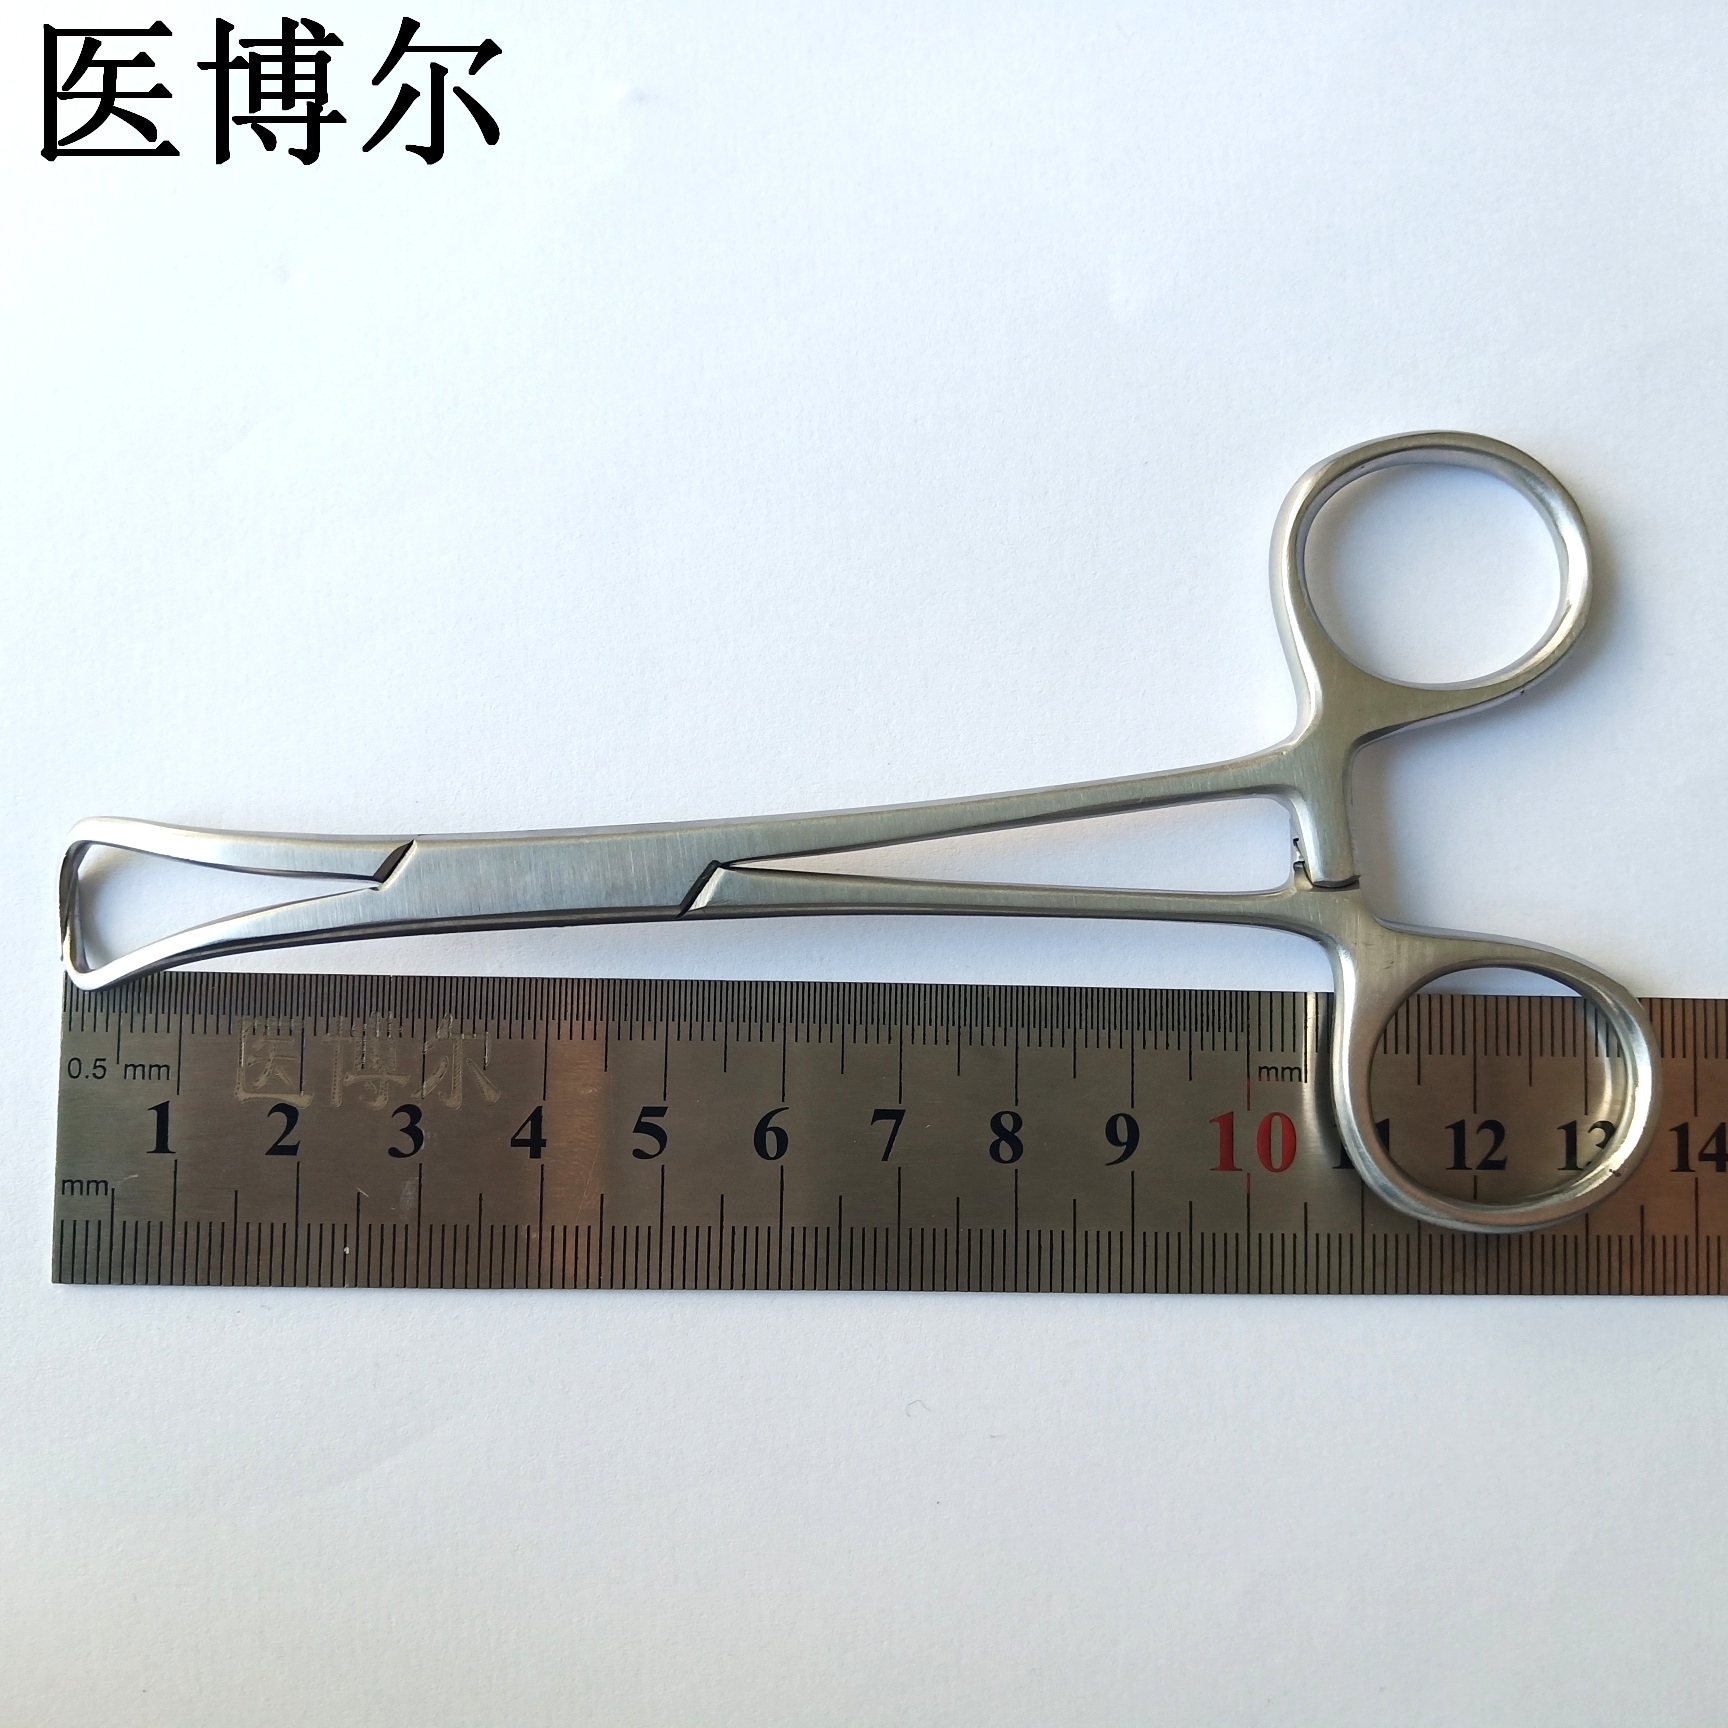 帕巾钳 13.5cm (2)_看图王.jpg